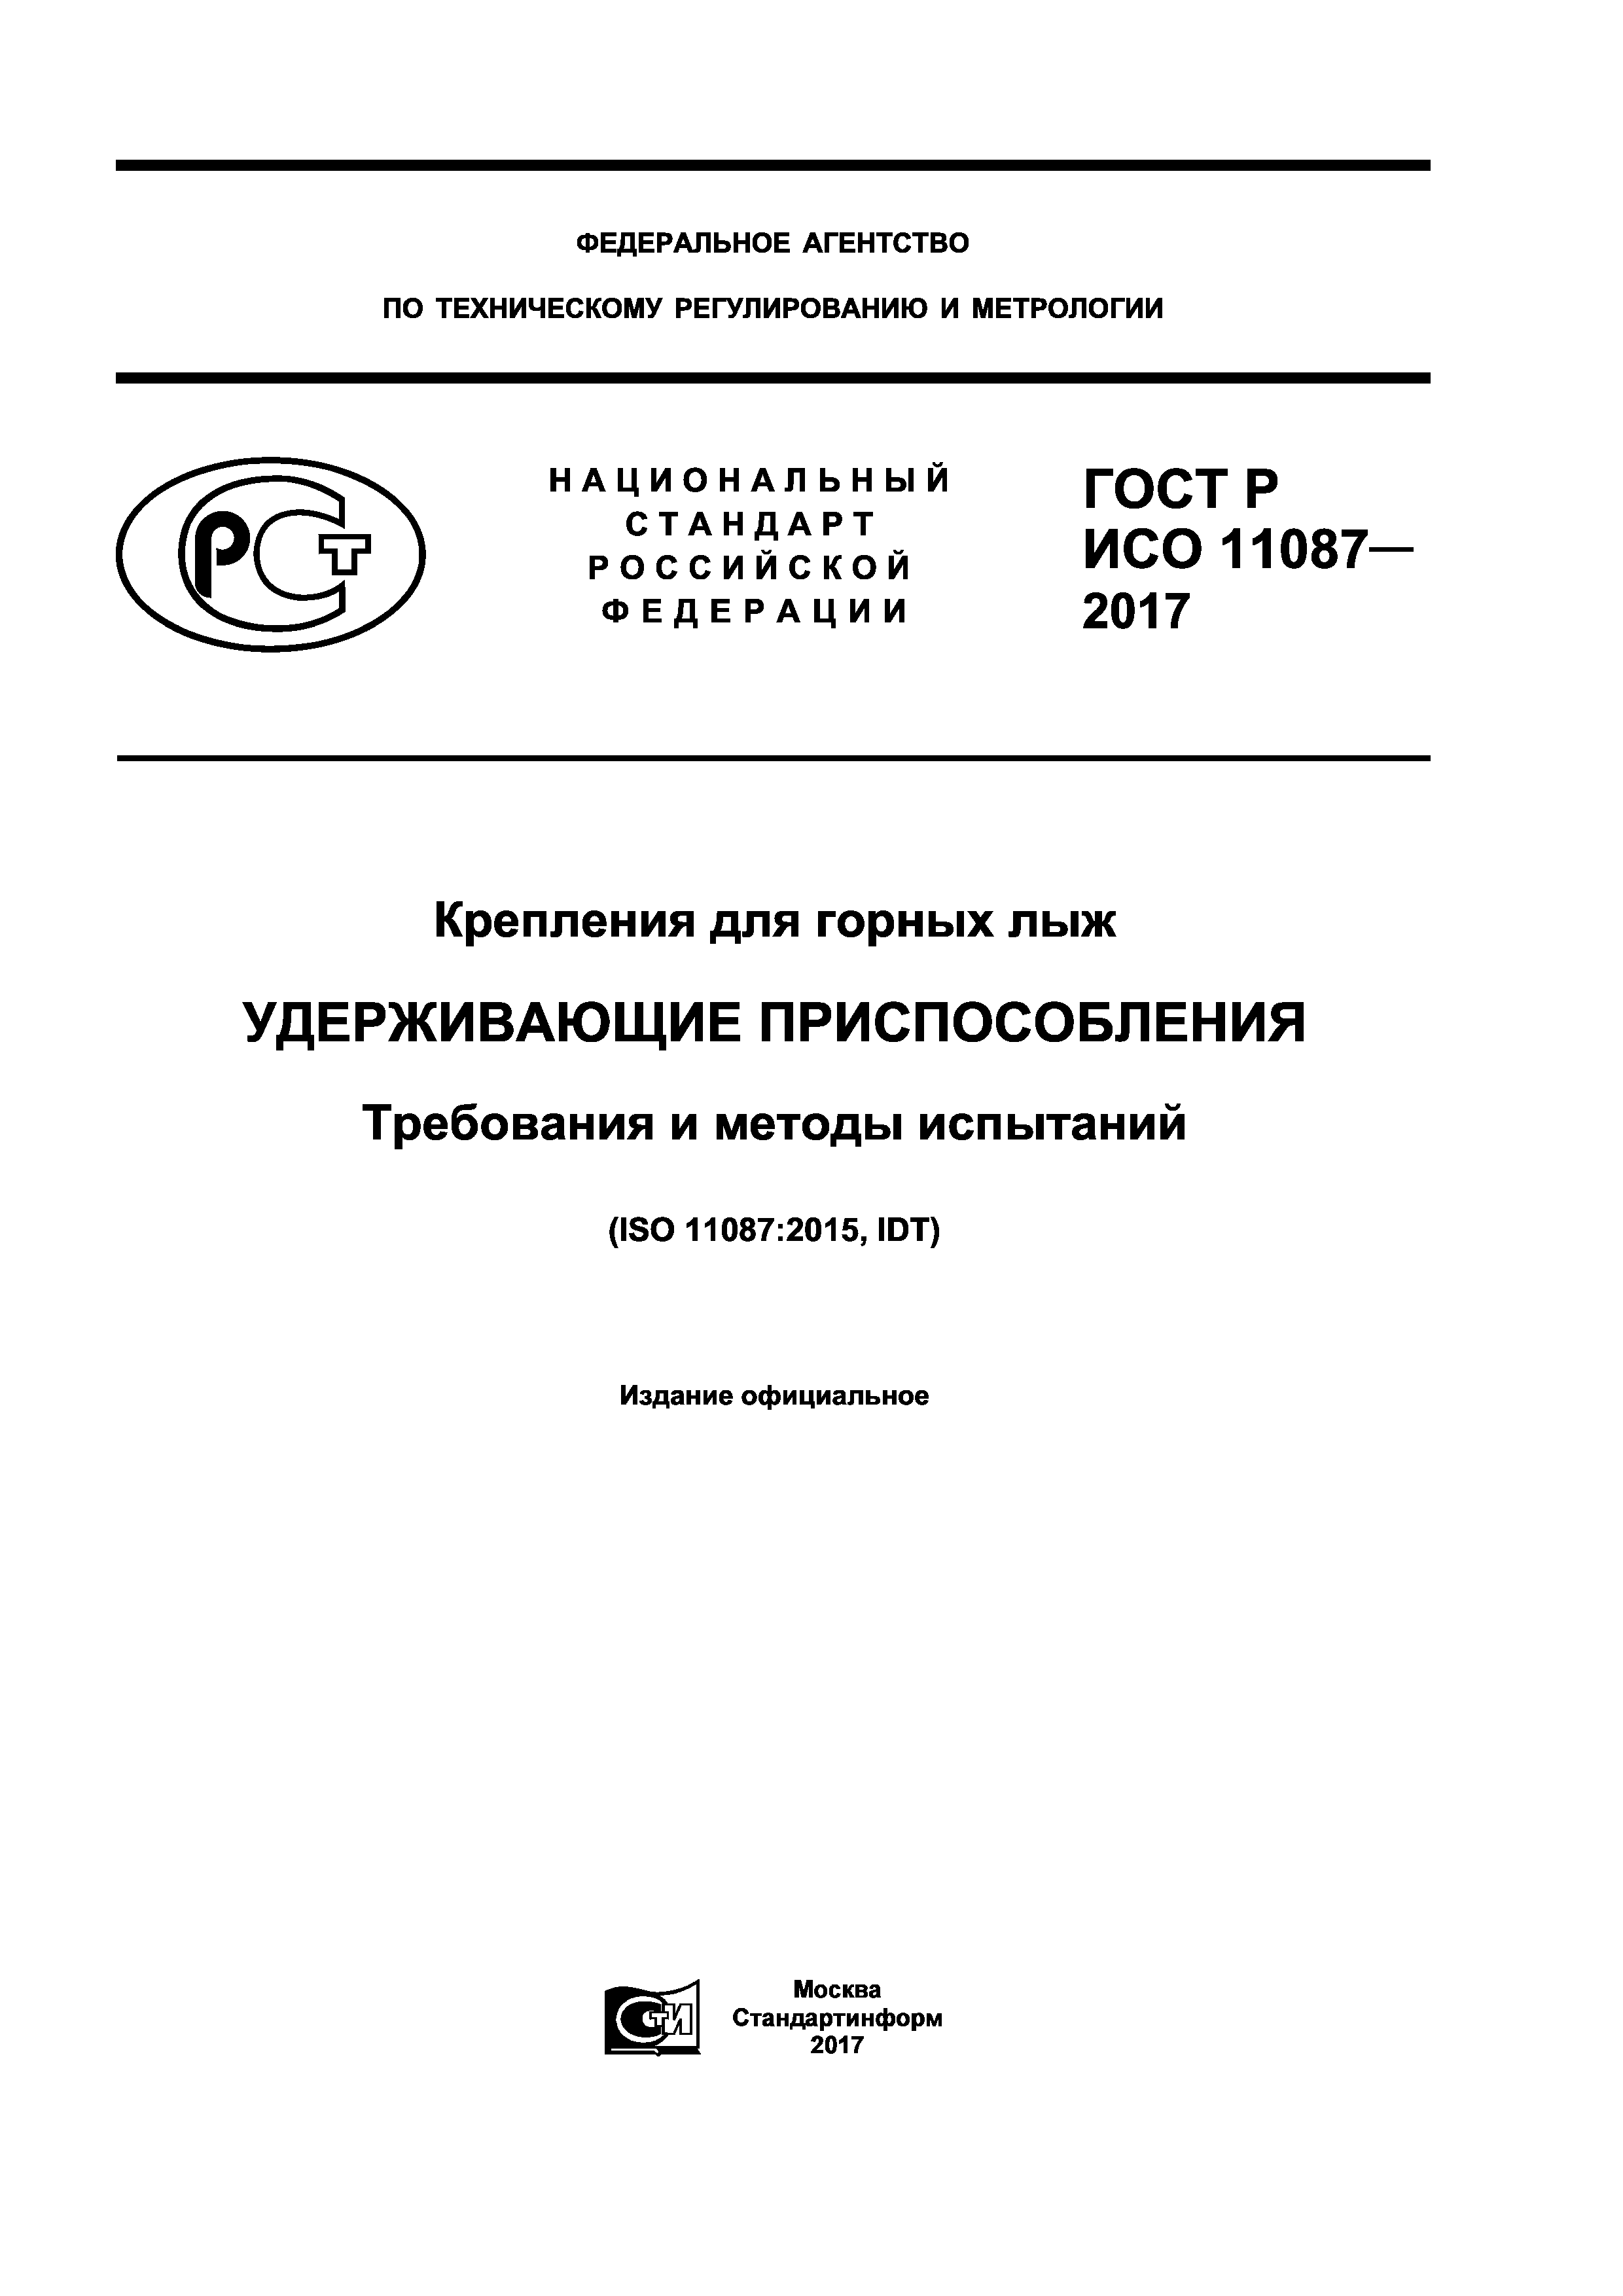 ГОСТ Р ИСО 11087-2017